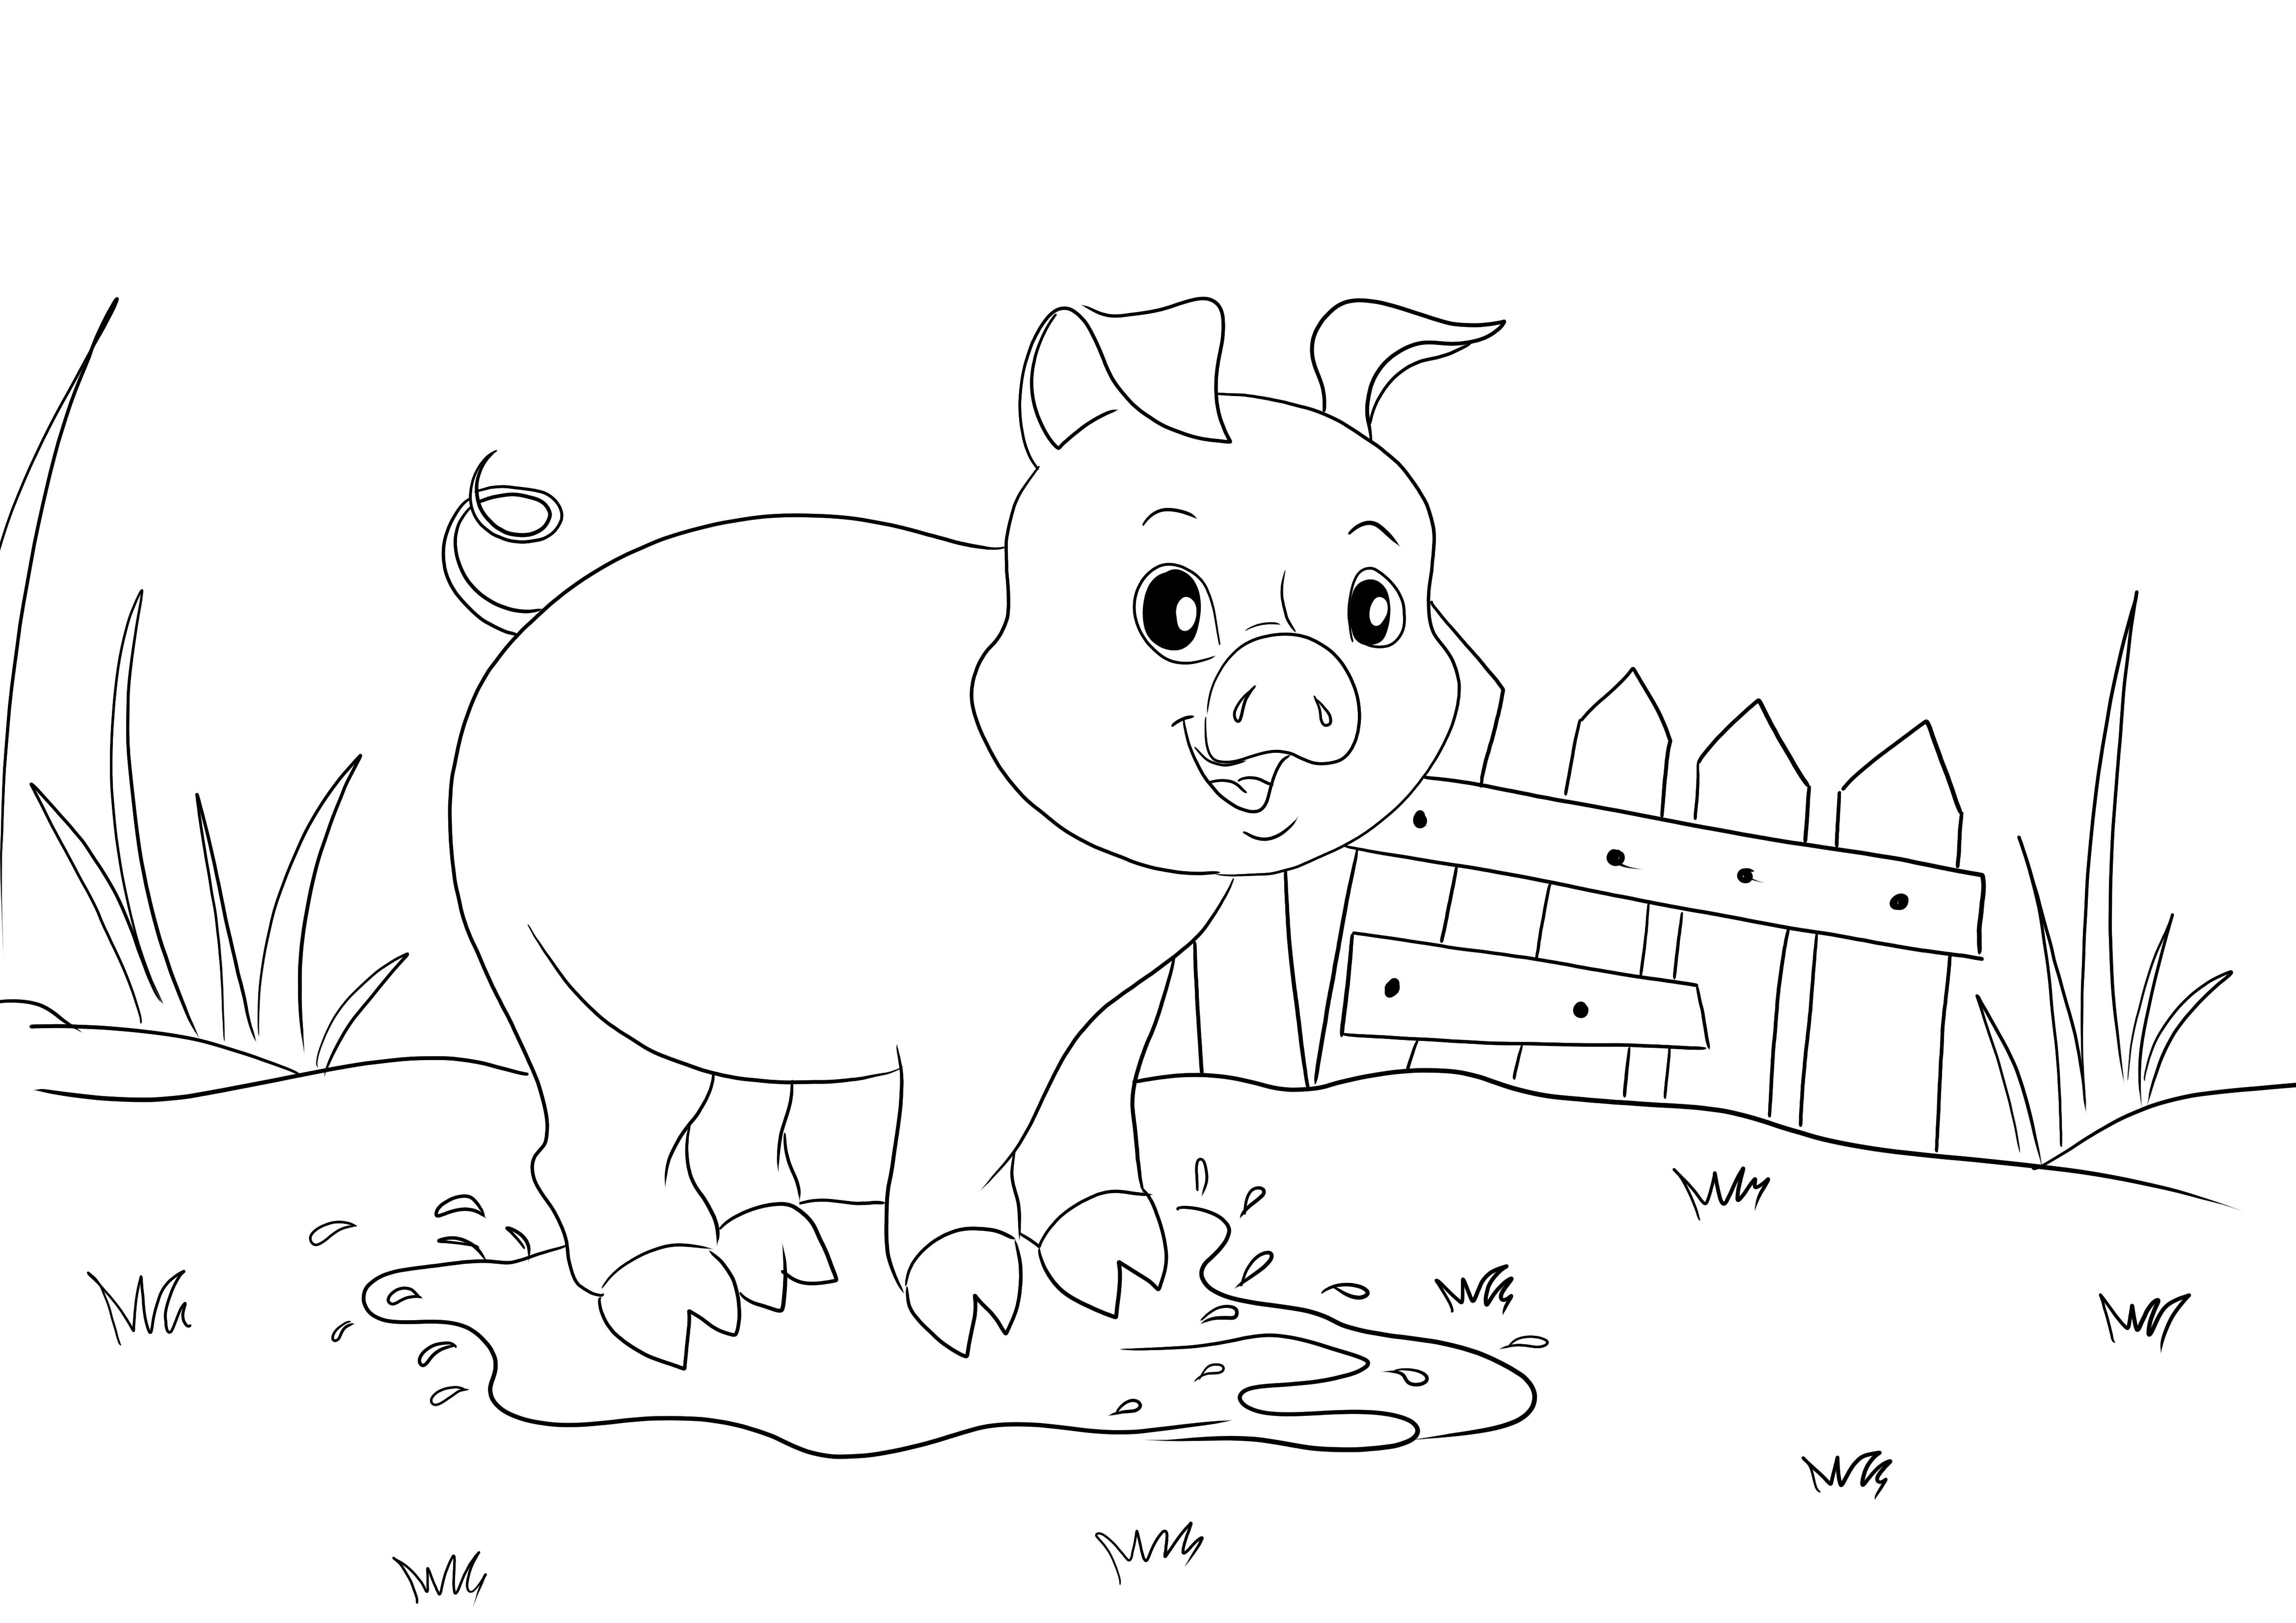 Warnai dan cetak gambar Babi dalam genangan air gratis untuk anak-anak